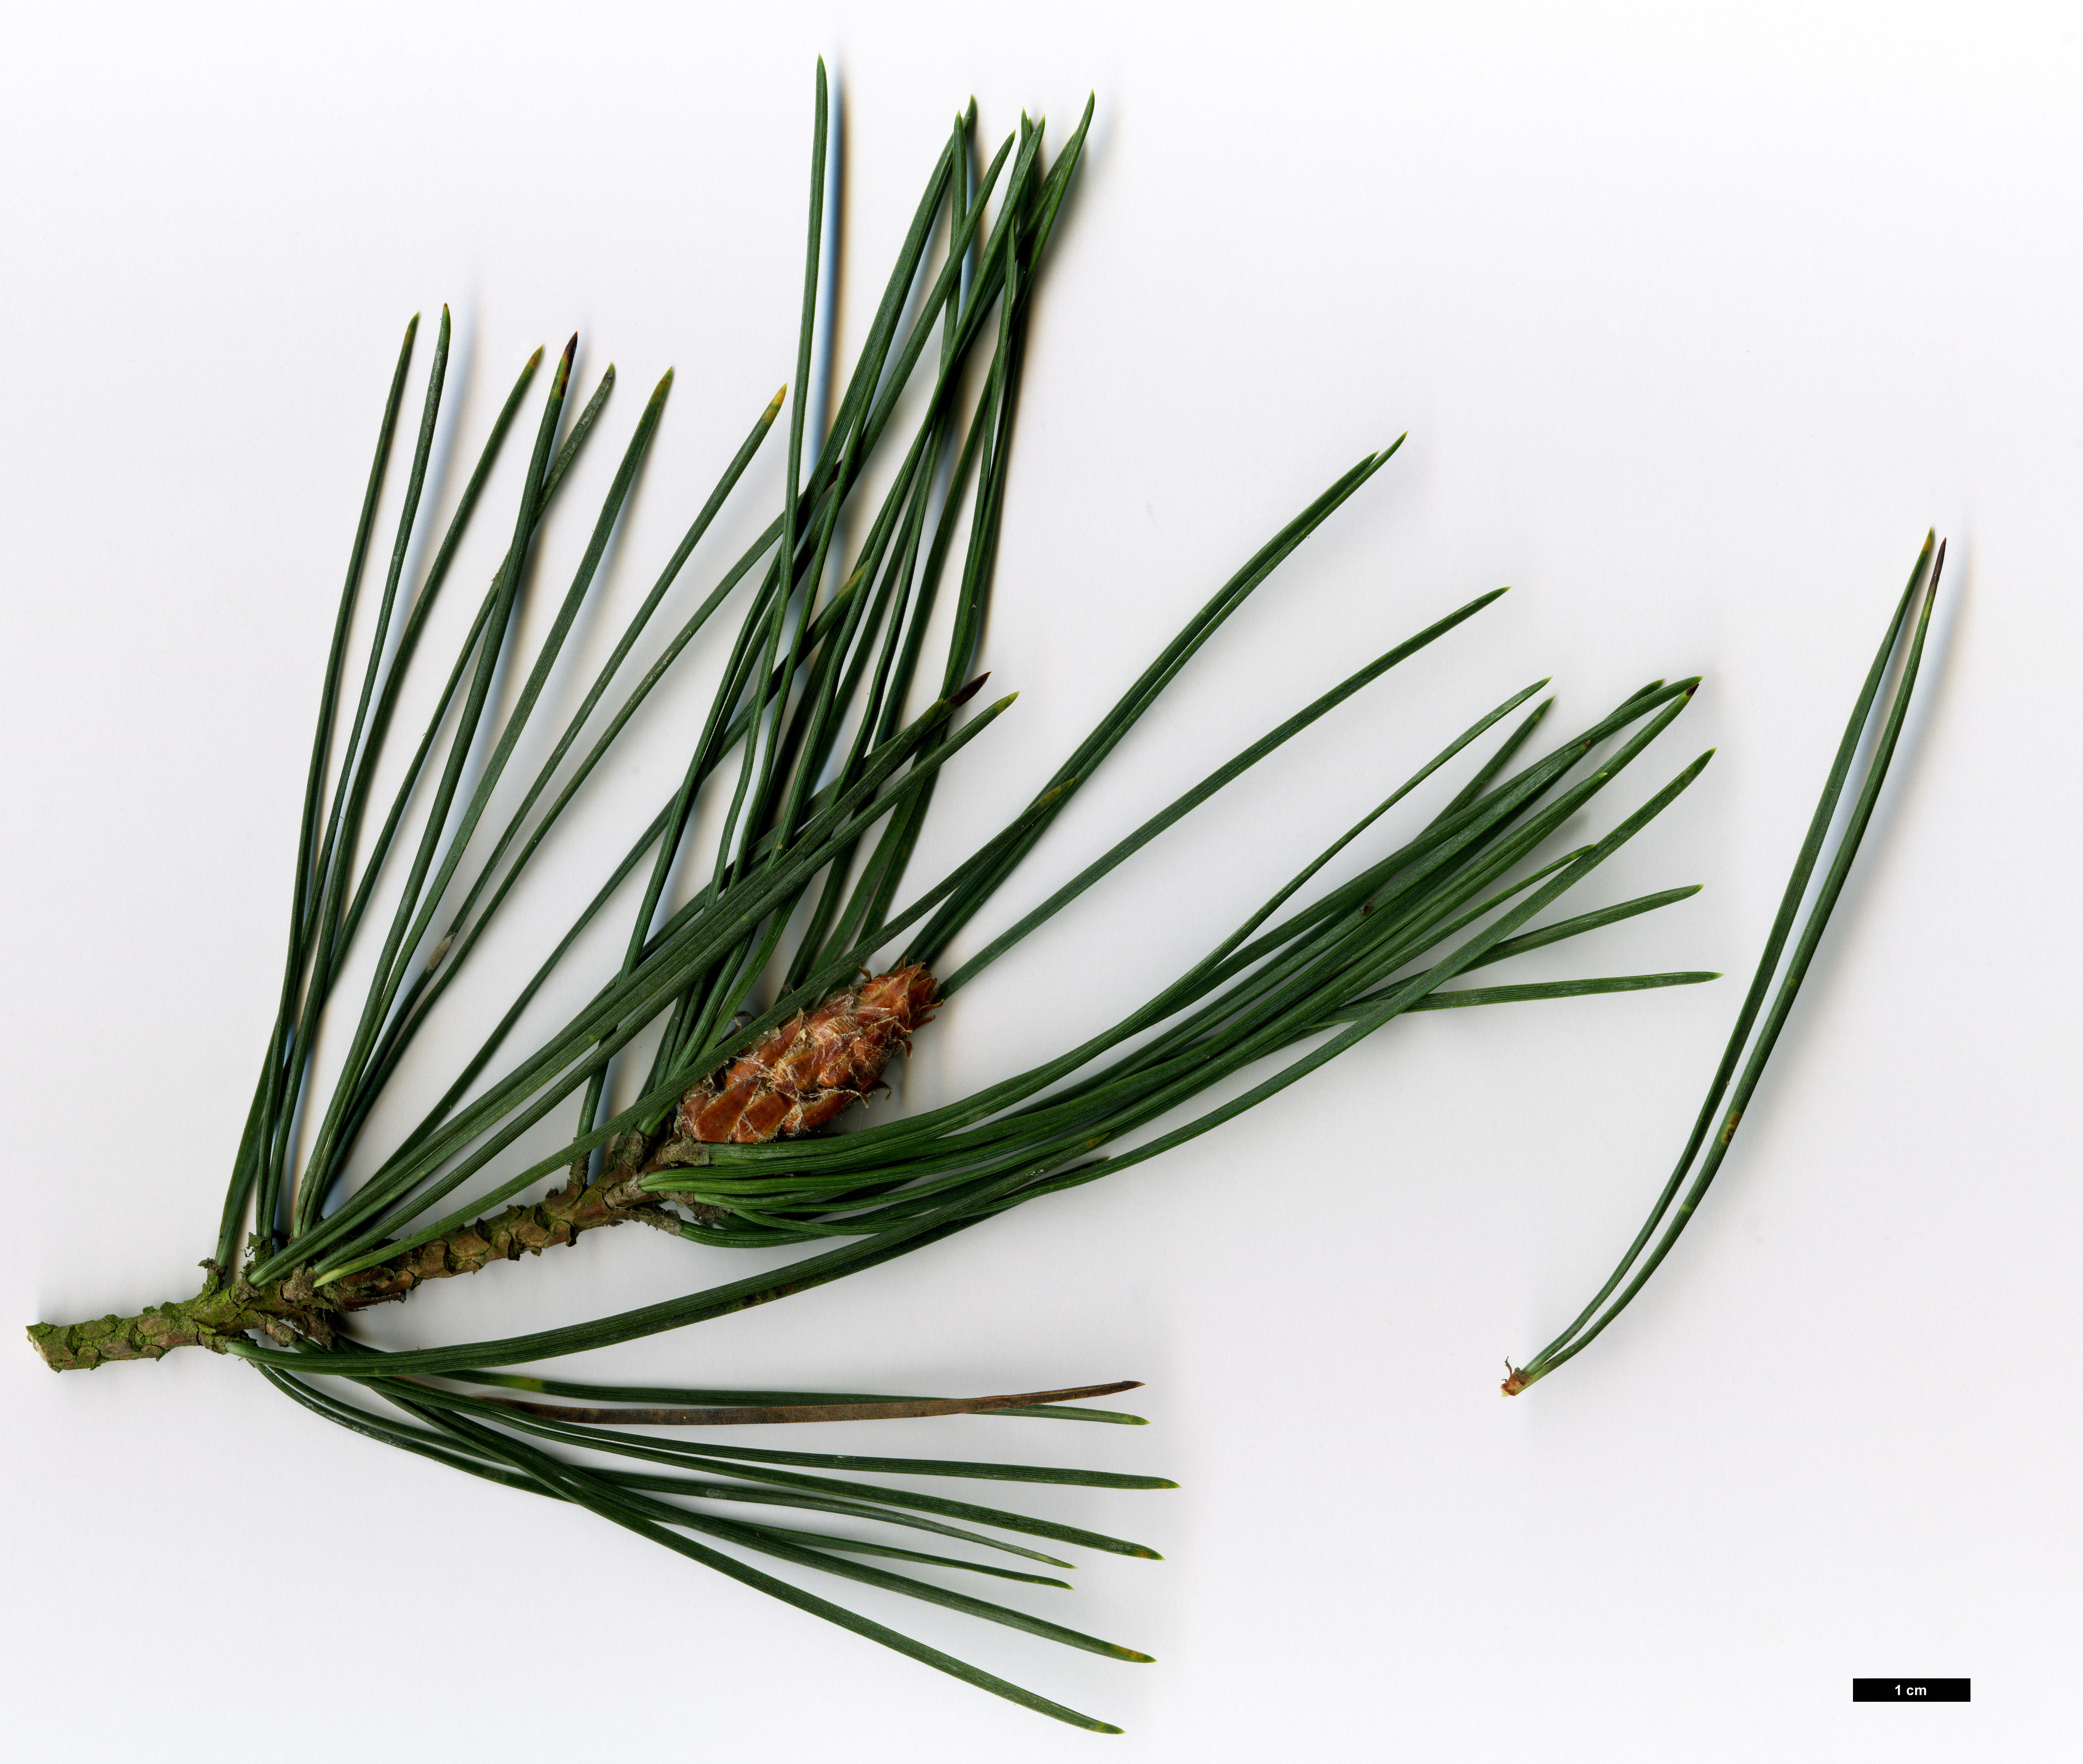 High resolution image: Family: Pinaceae - Genus: Pinus - Taxon: ×rhaetica - SpeciesSub: (P.mugo × P.sylvestris)